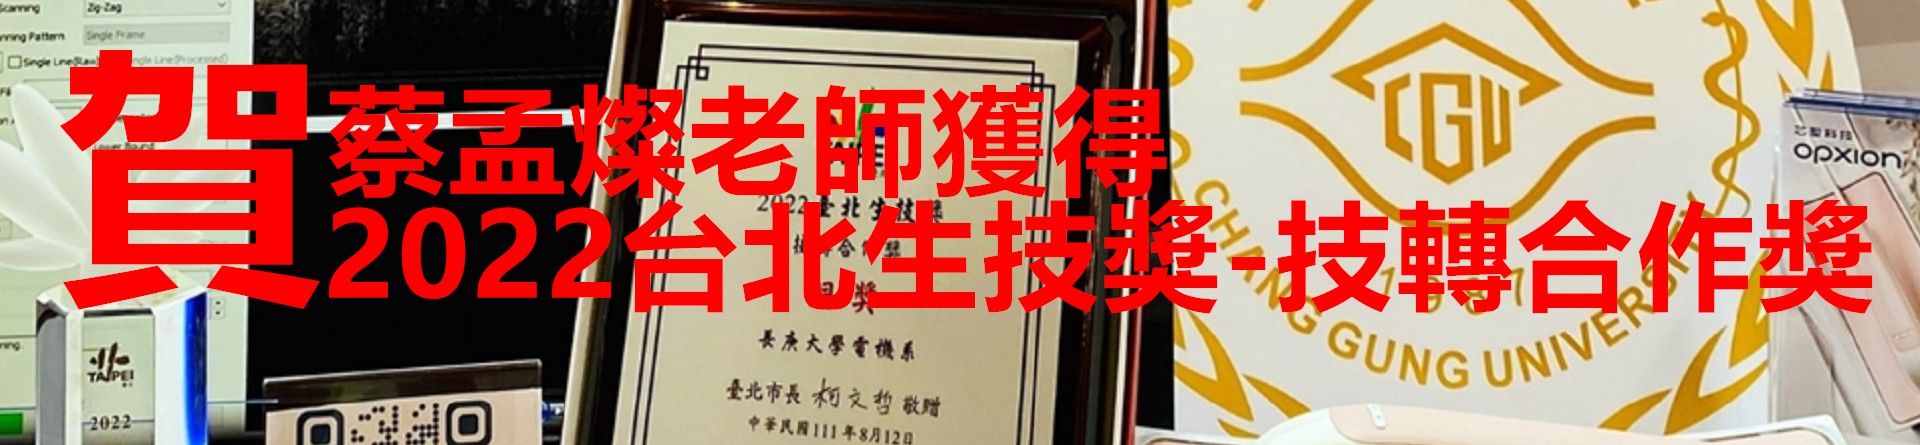 蔡孟燦老師獲台北生技獎